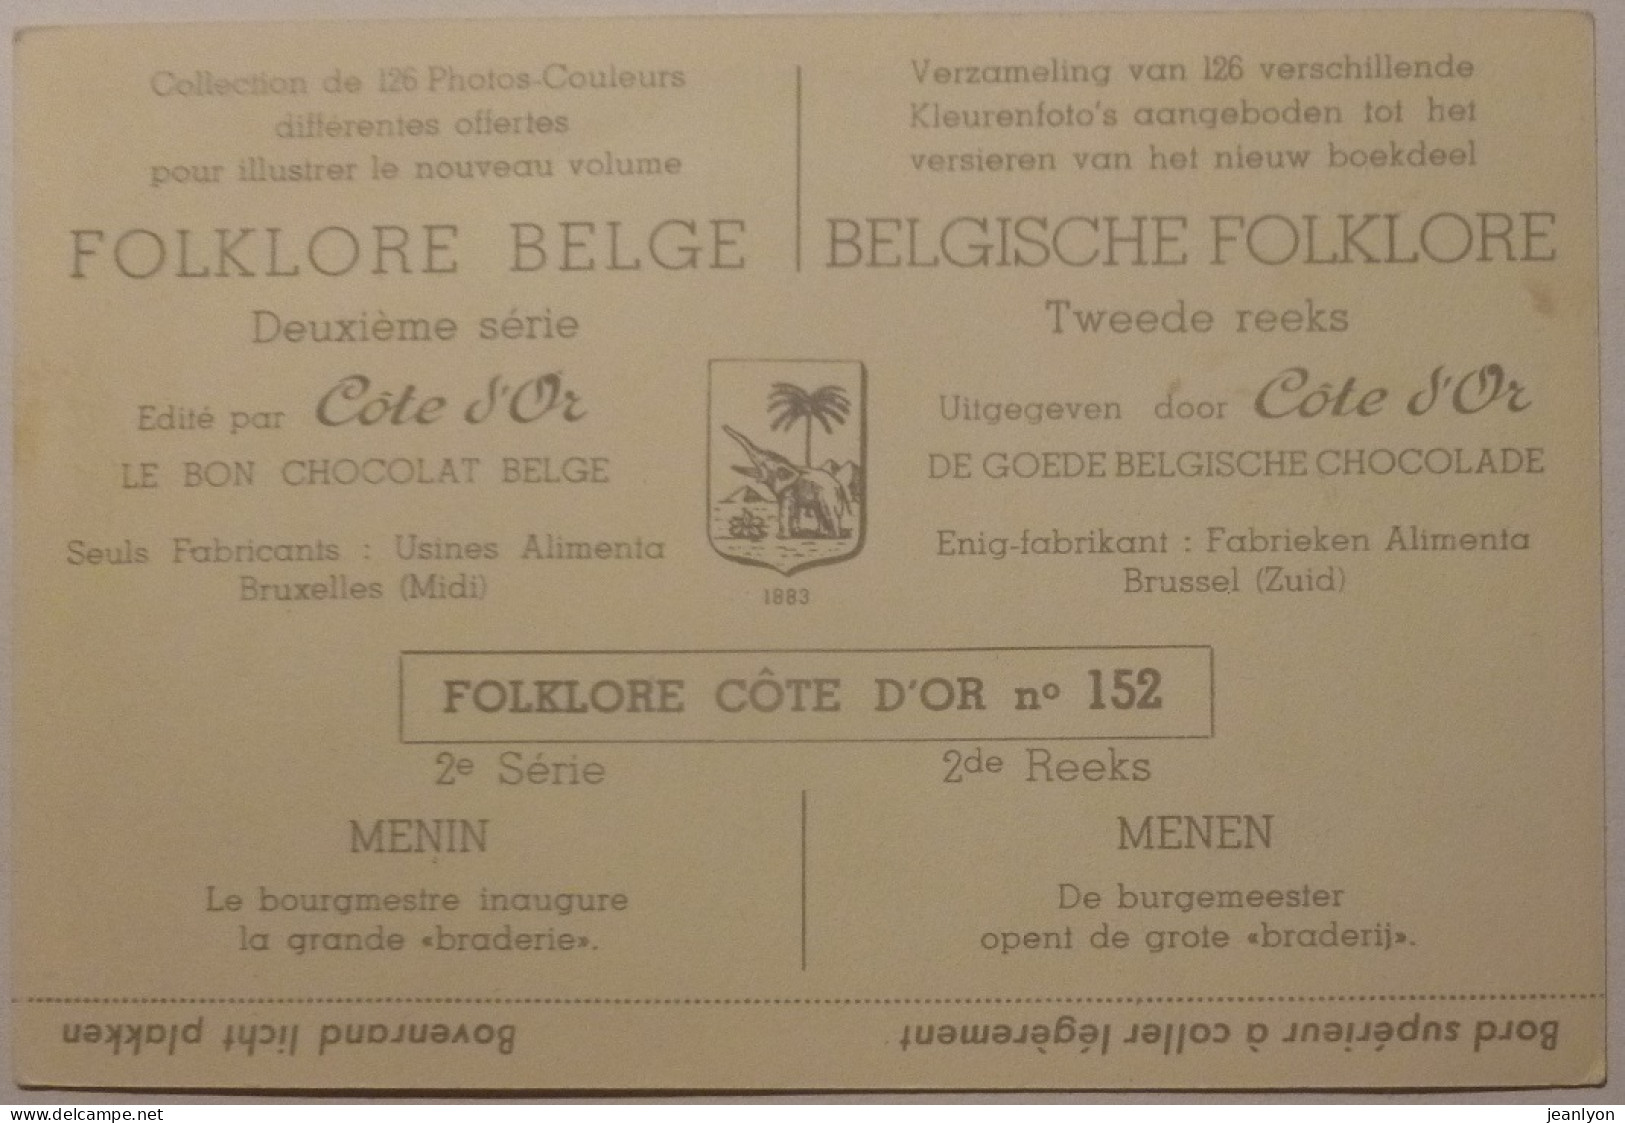 BRADERIE / MARCHE - Inauguration Par Le Bourgmestre / MENIN En Belgique - Image Chocolat Cote D'Or / Folklore Belge - Côte D'Or